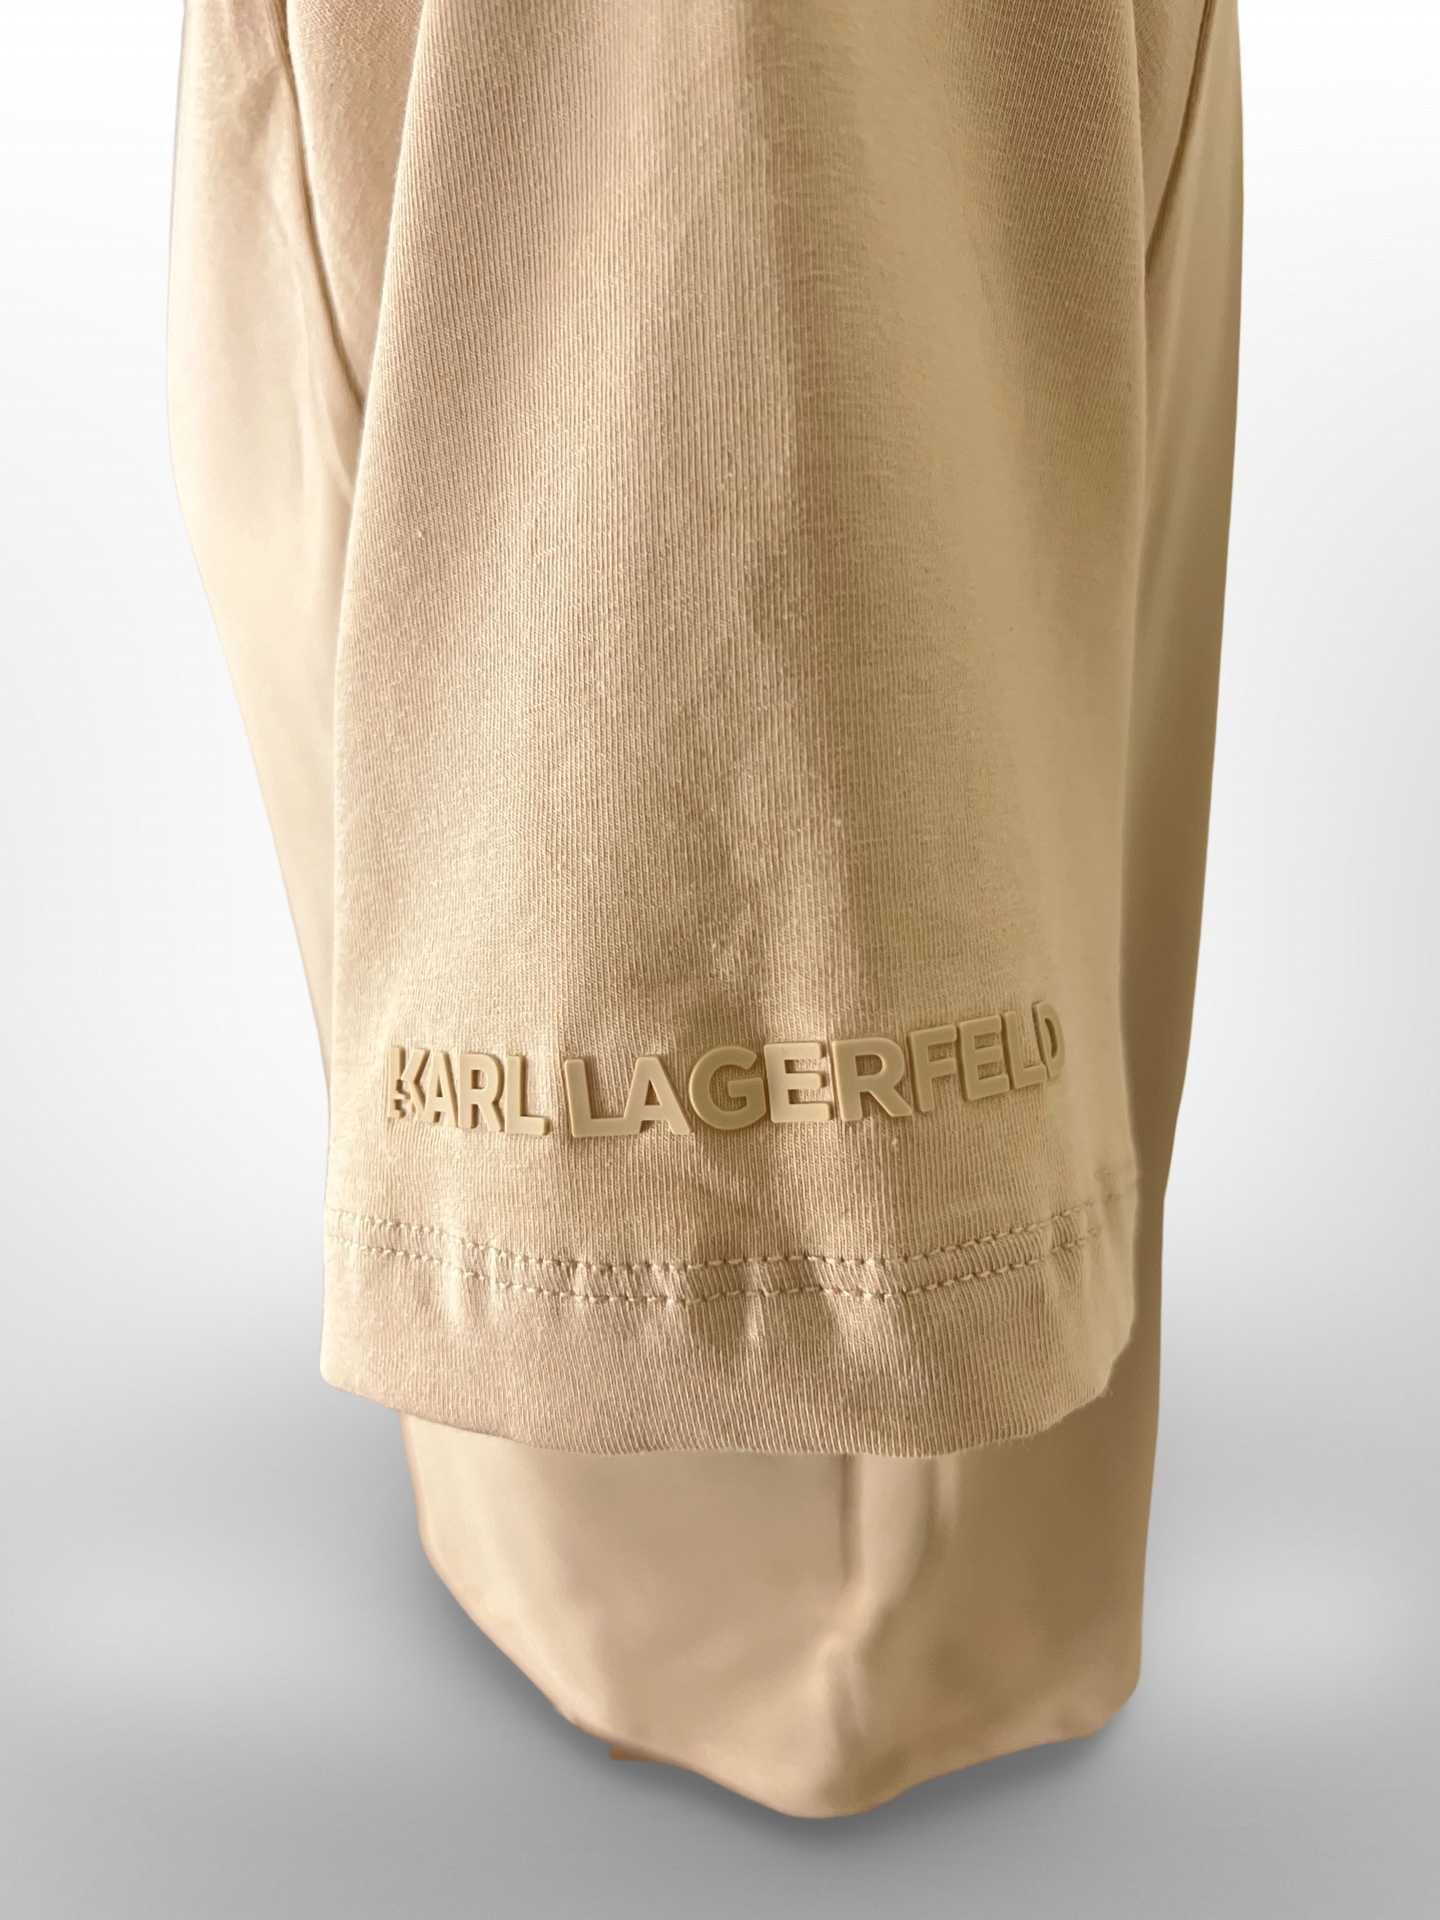 UNRELEASED Автентична Karl Lagerfeld Бежова тениска ГУМЕНА щампа S M L